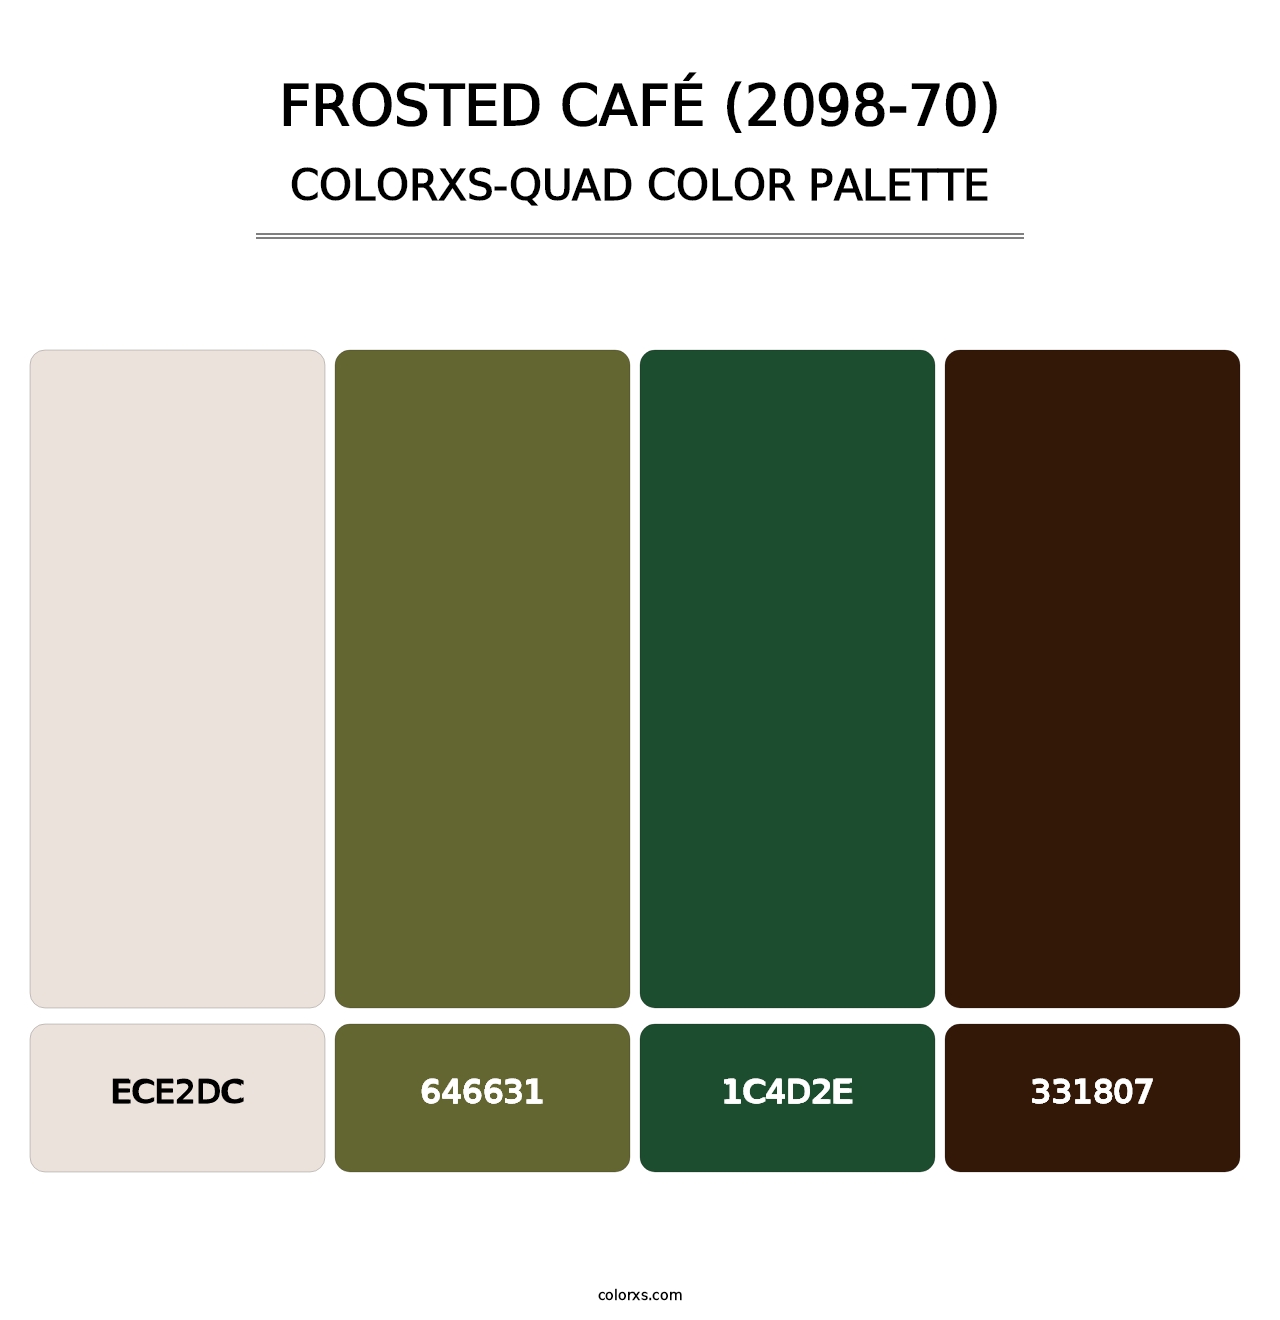 Frosted Café (2098-70) - Colorxs Quad Palette